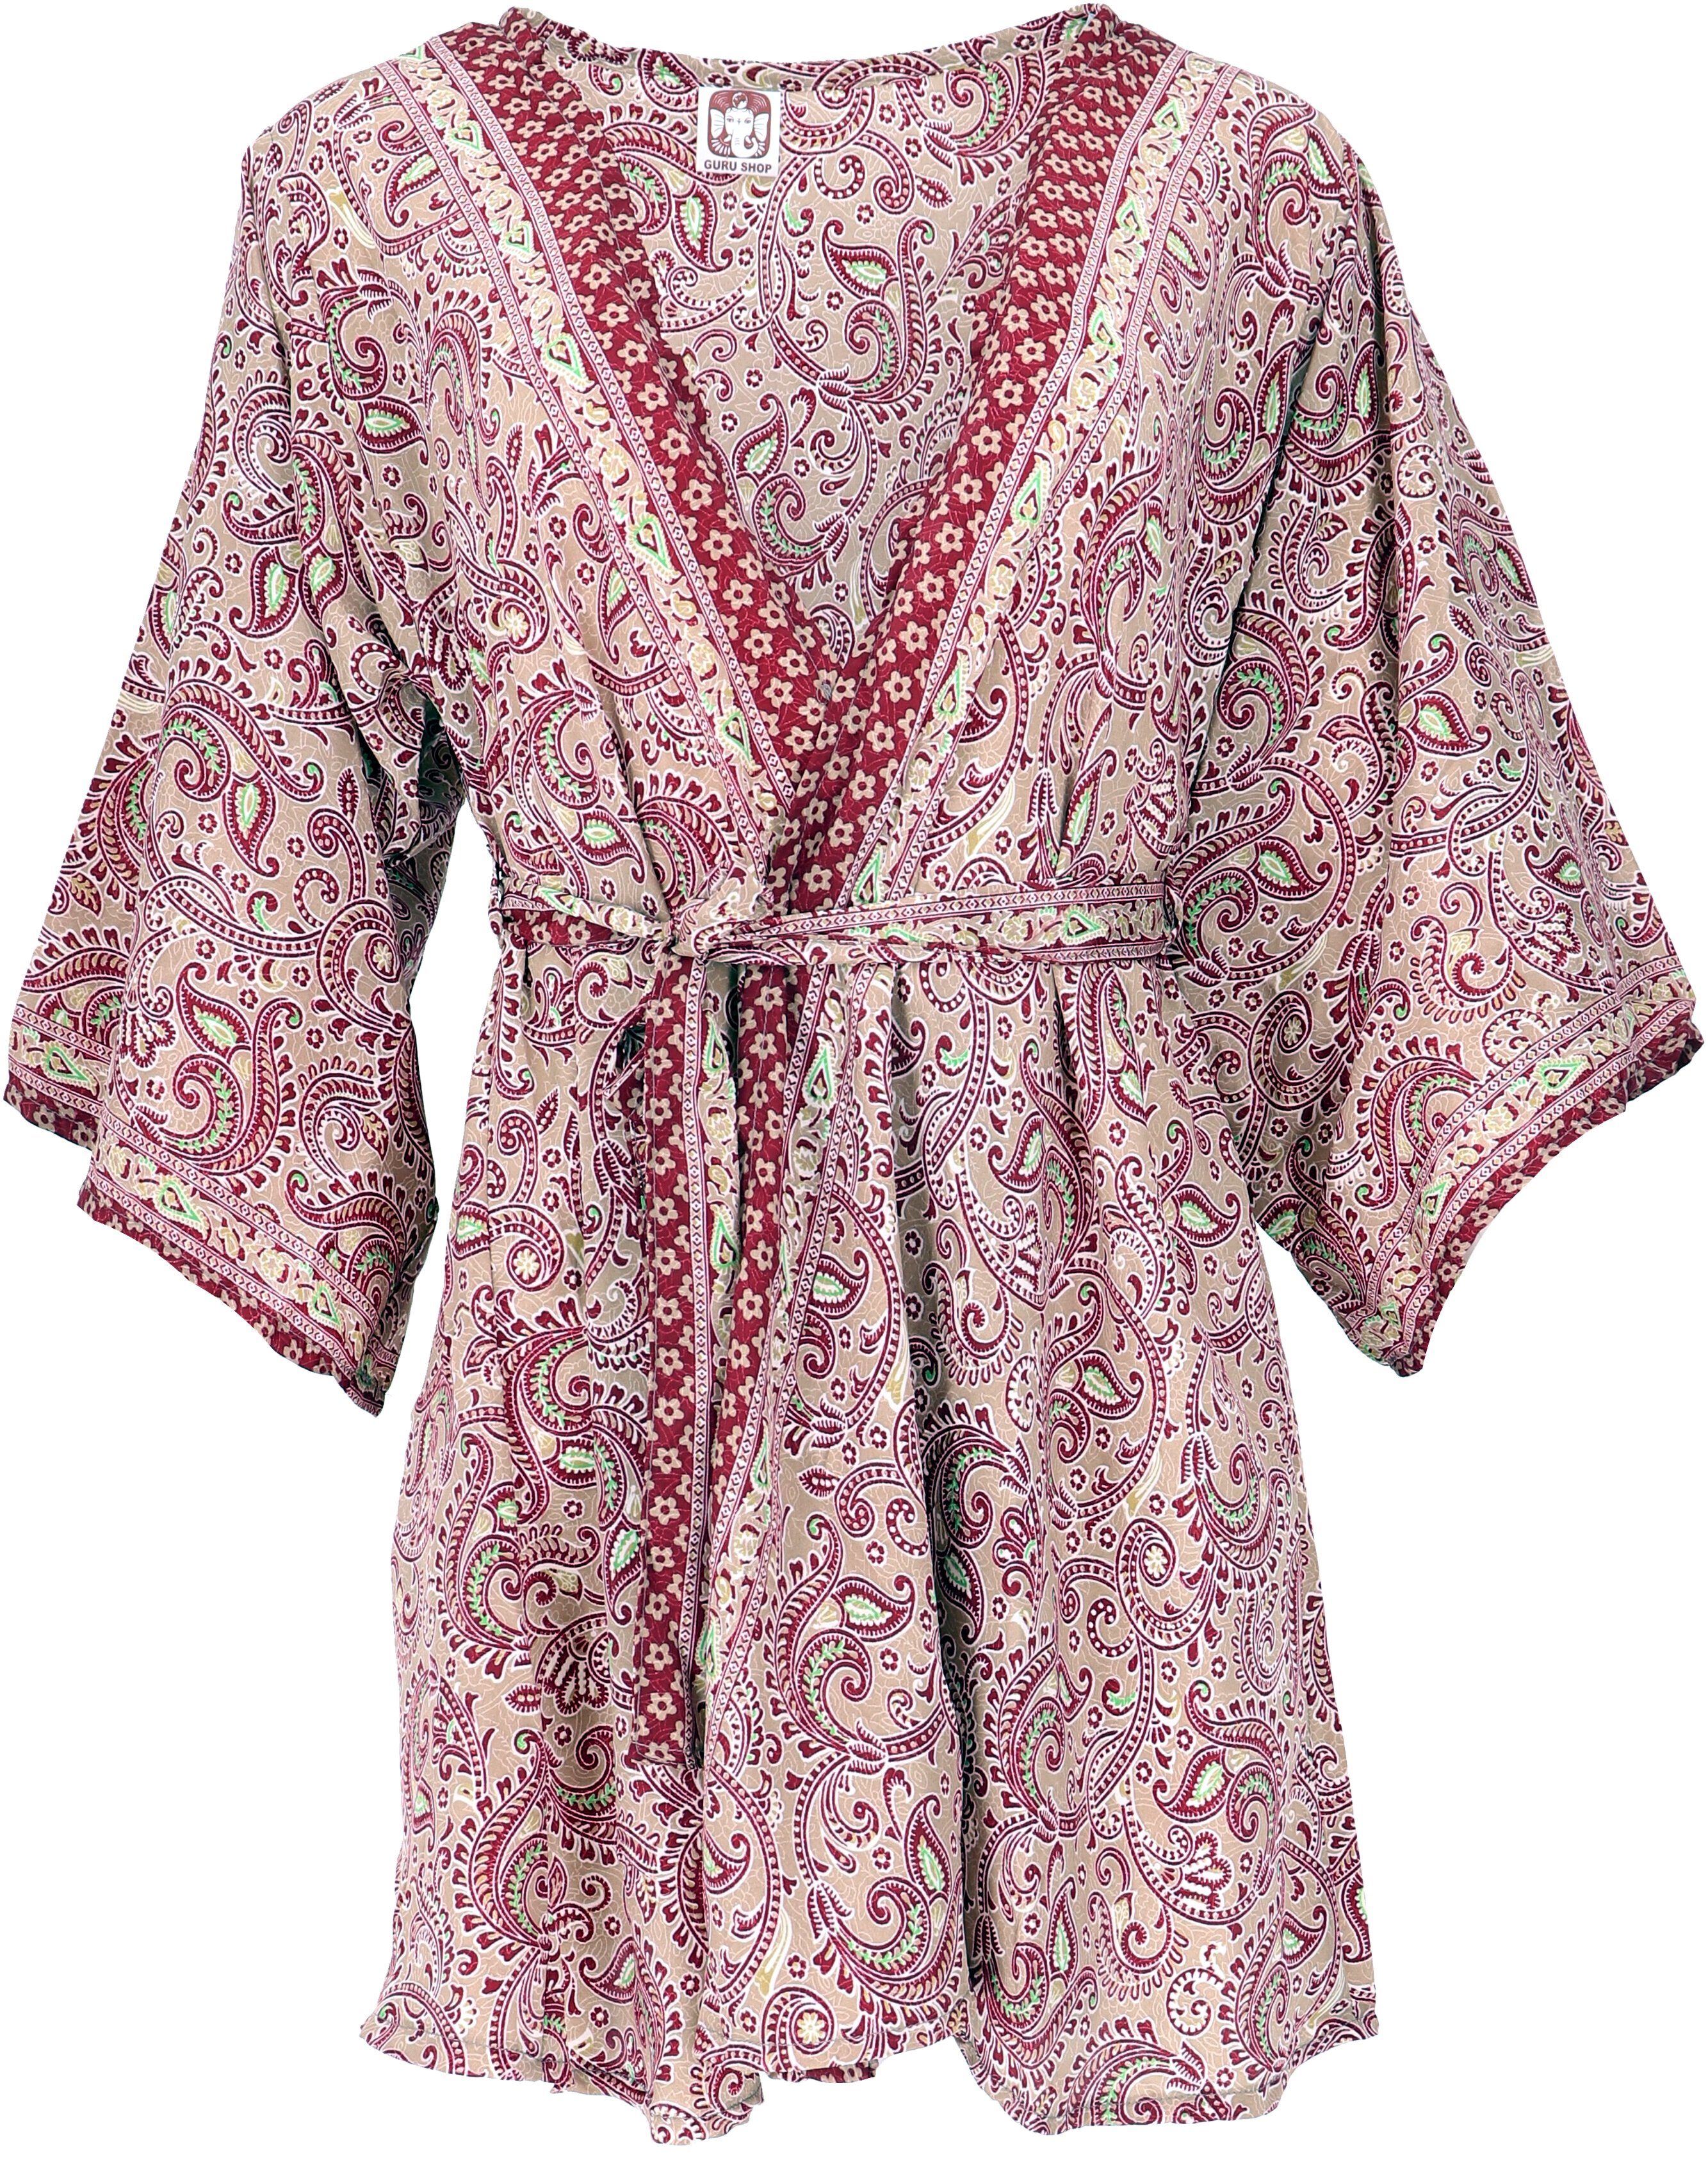 Kimonokleid.., Kimonojäckchen, beige/bordeaux Guru-Shop Bekleidung Kimono Boho alternative kurzer Kimono,